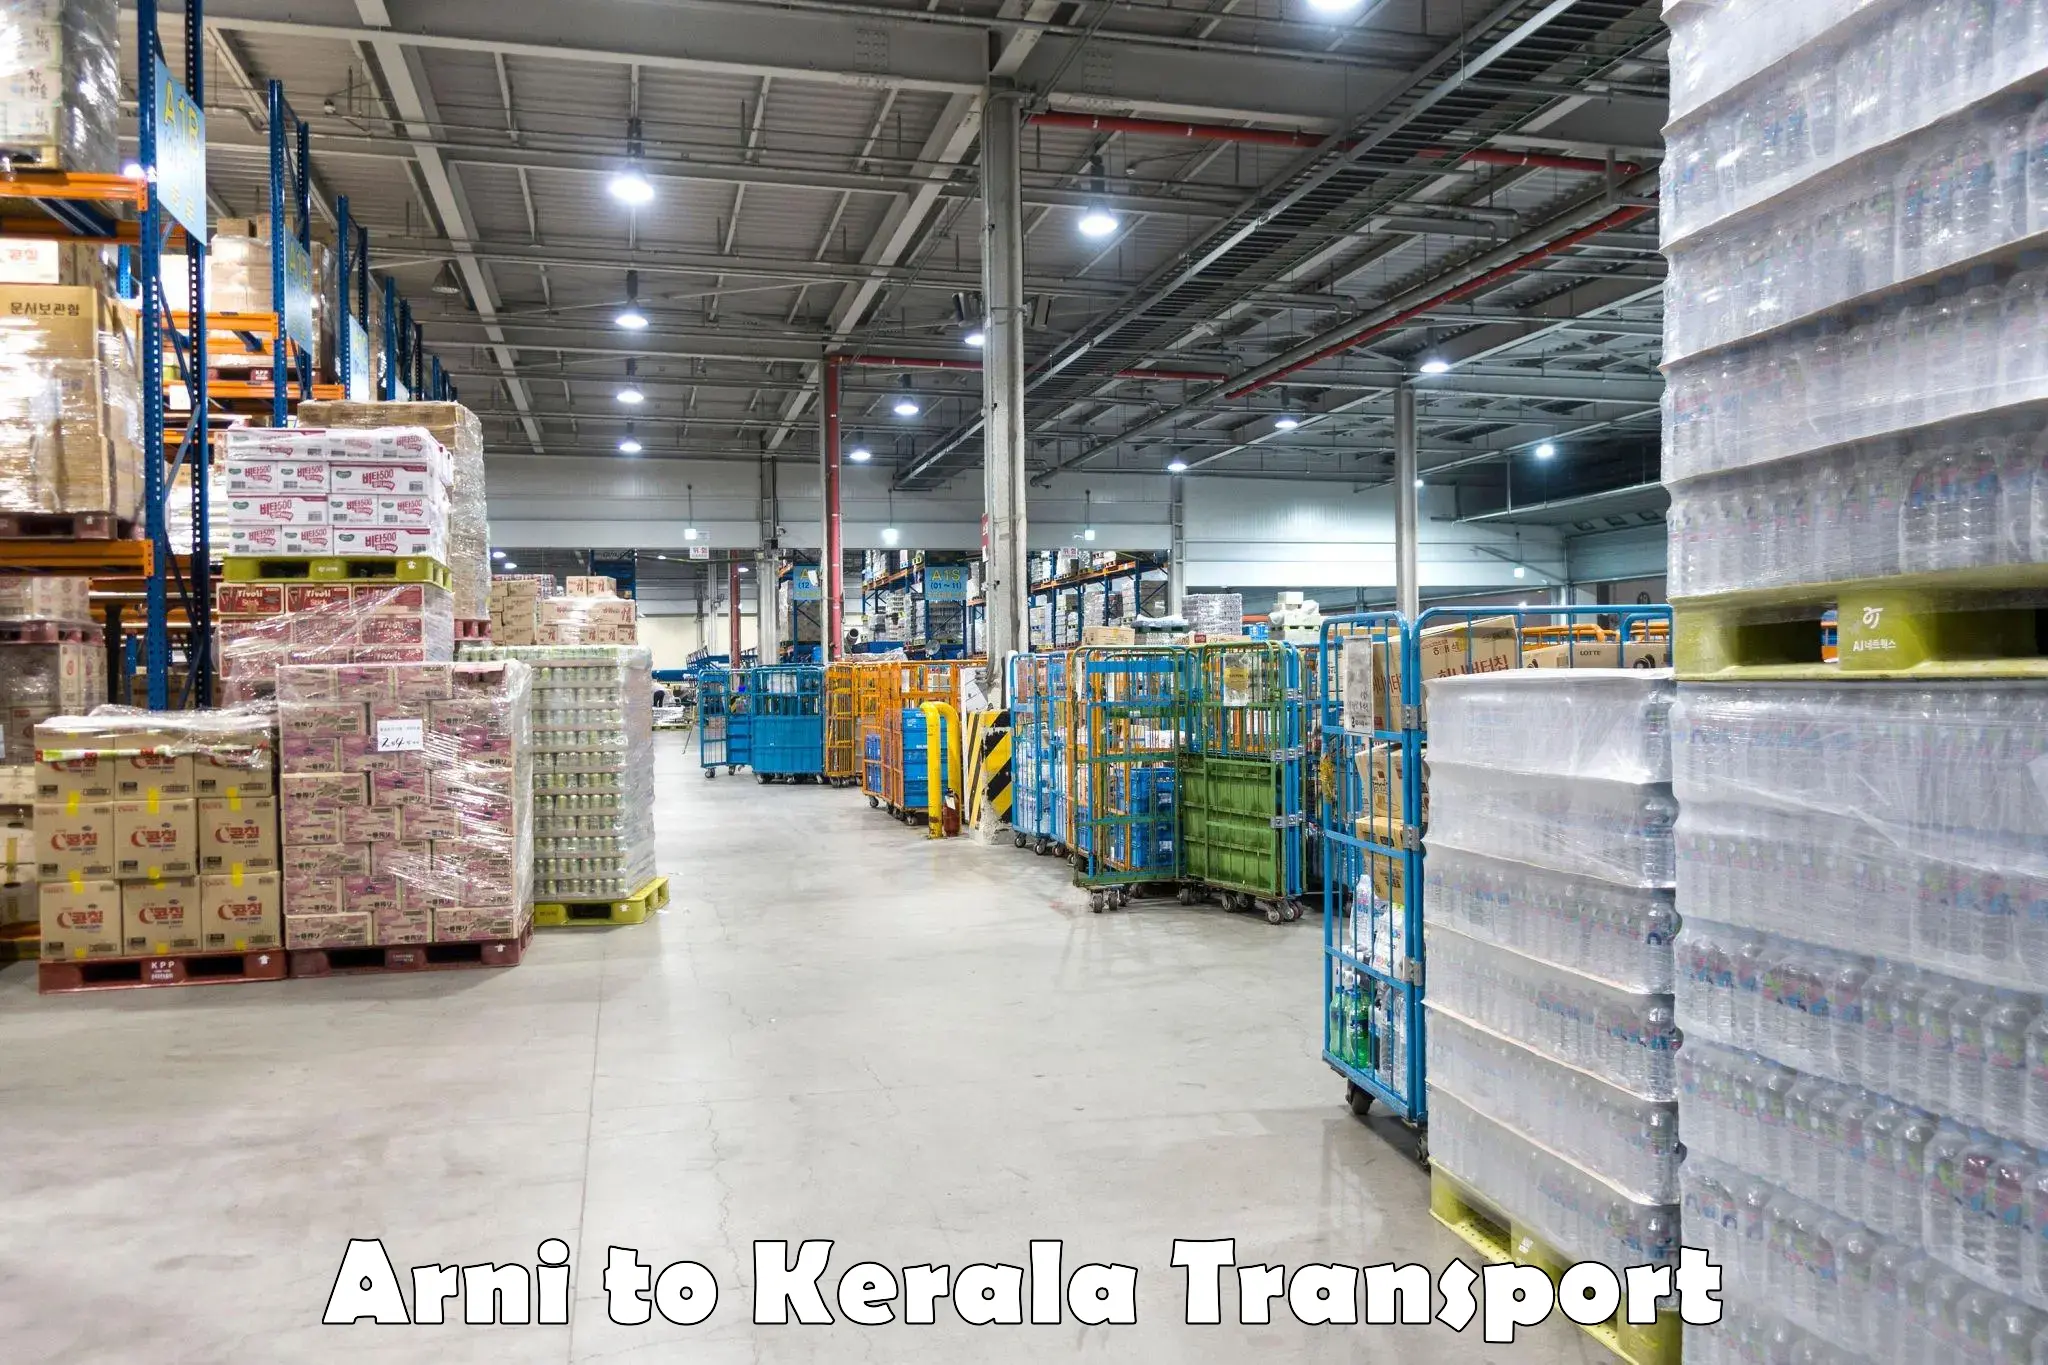 Lorry transport service Arni to Kothanalloor